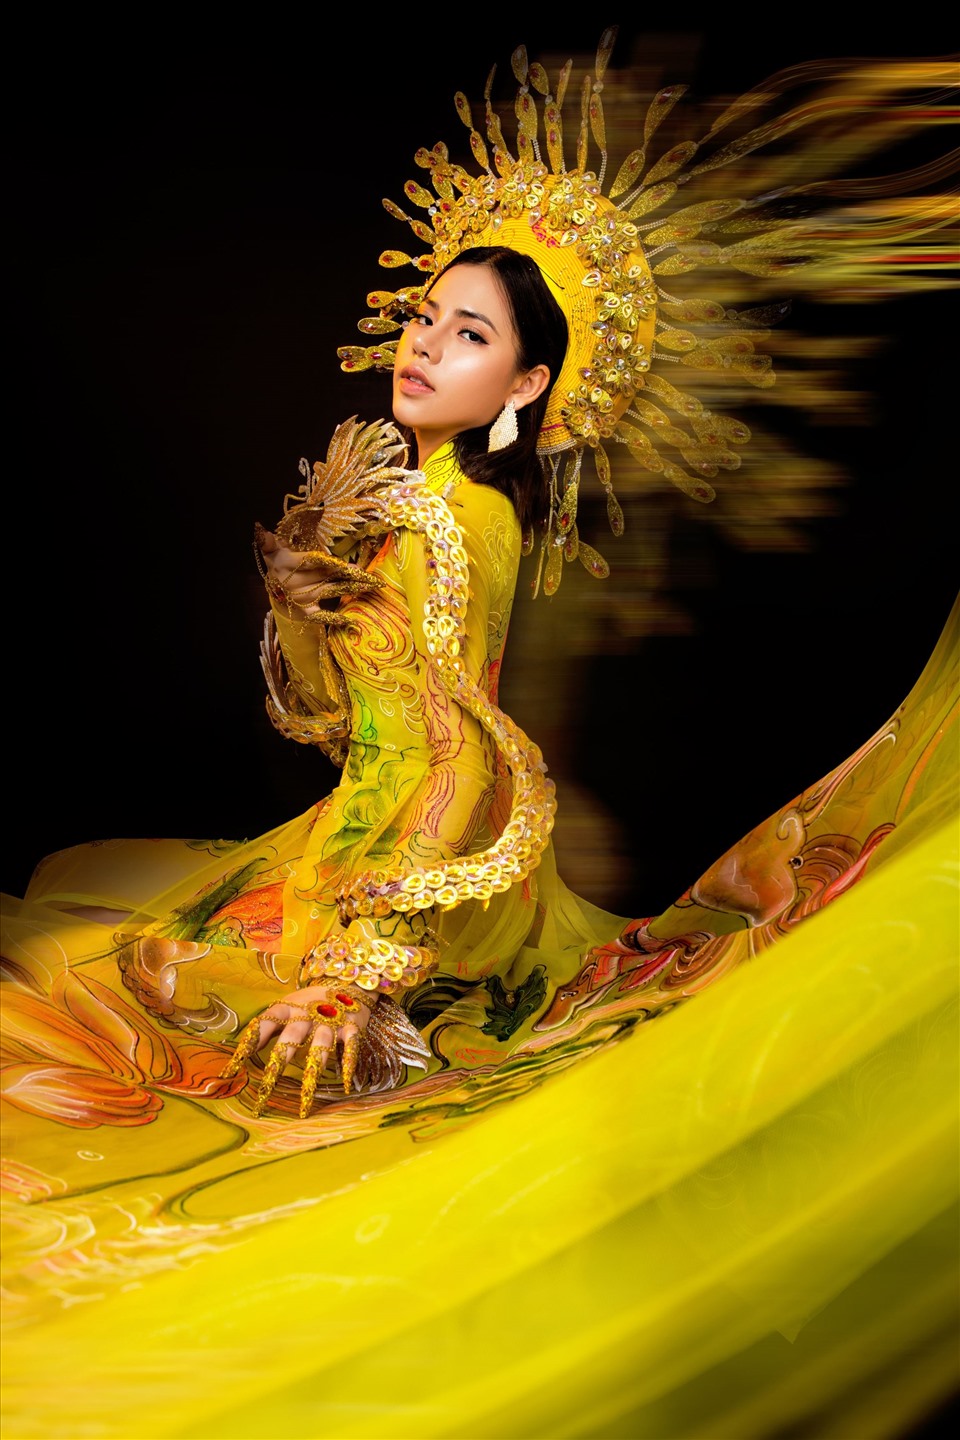 Đỗ Thị Minh Tâm từng lọt top 45 Hoa hậu Hoàn vũ Việt Nam 2019 và vào top 5 gương mặt được yêu thích nhất mùa giải năm đó.